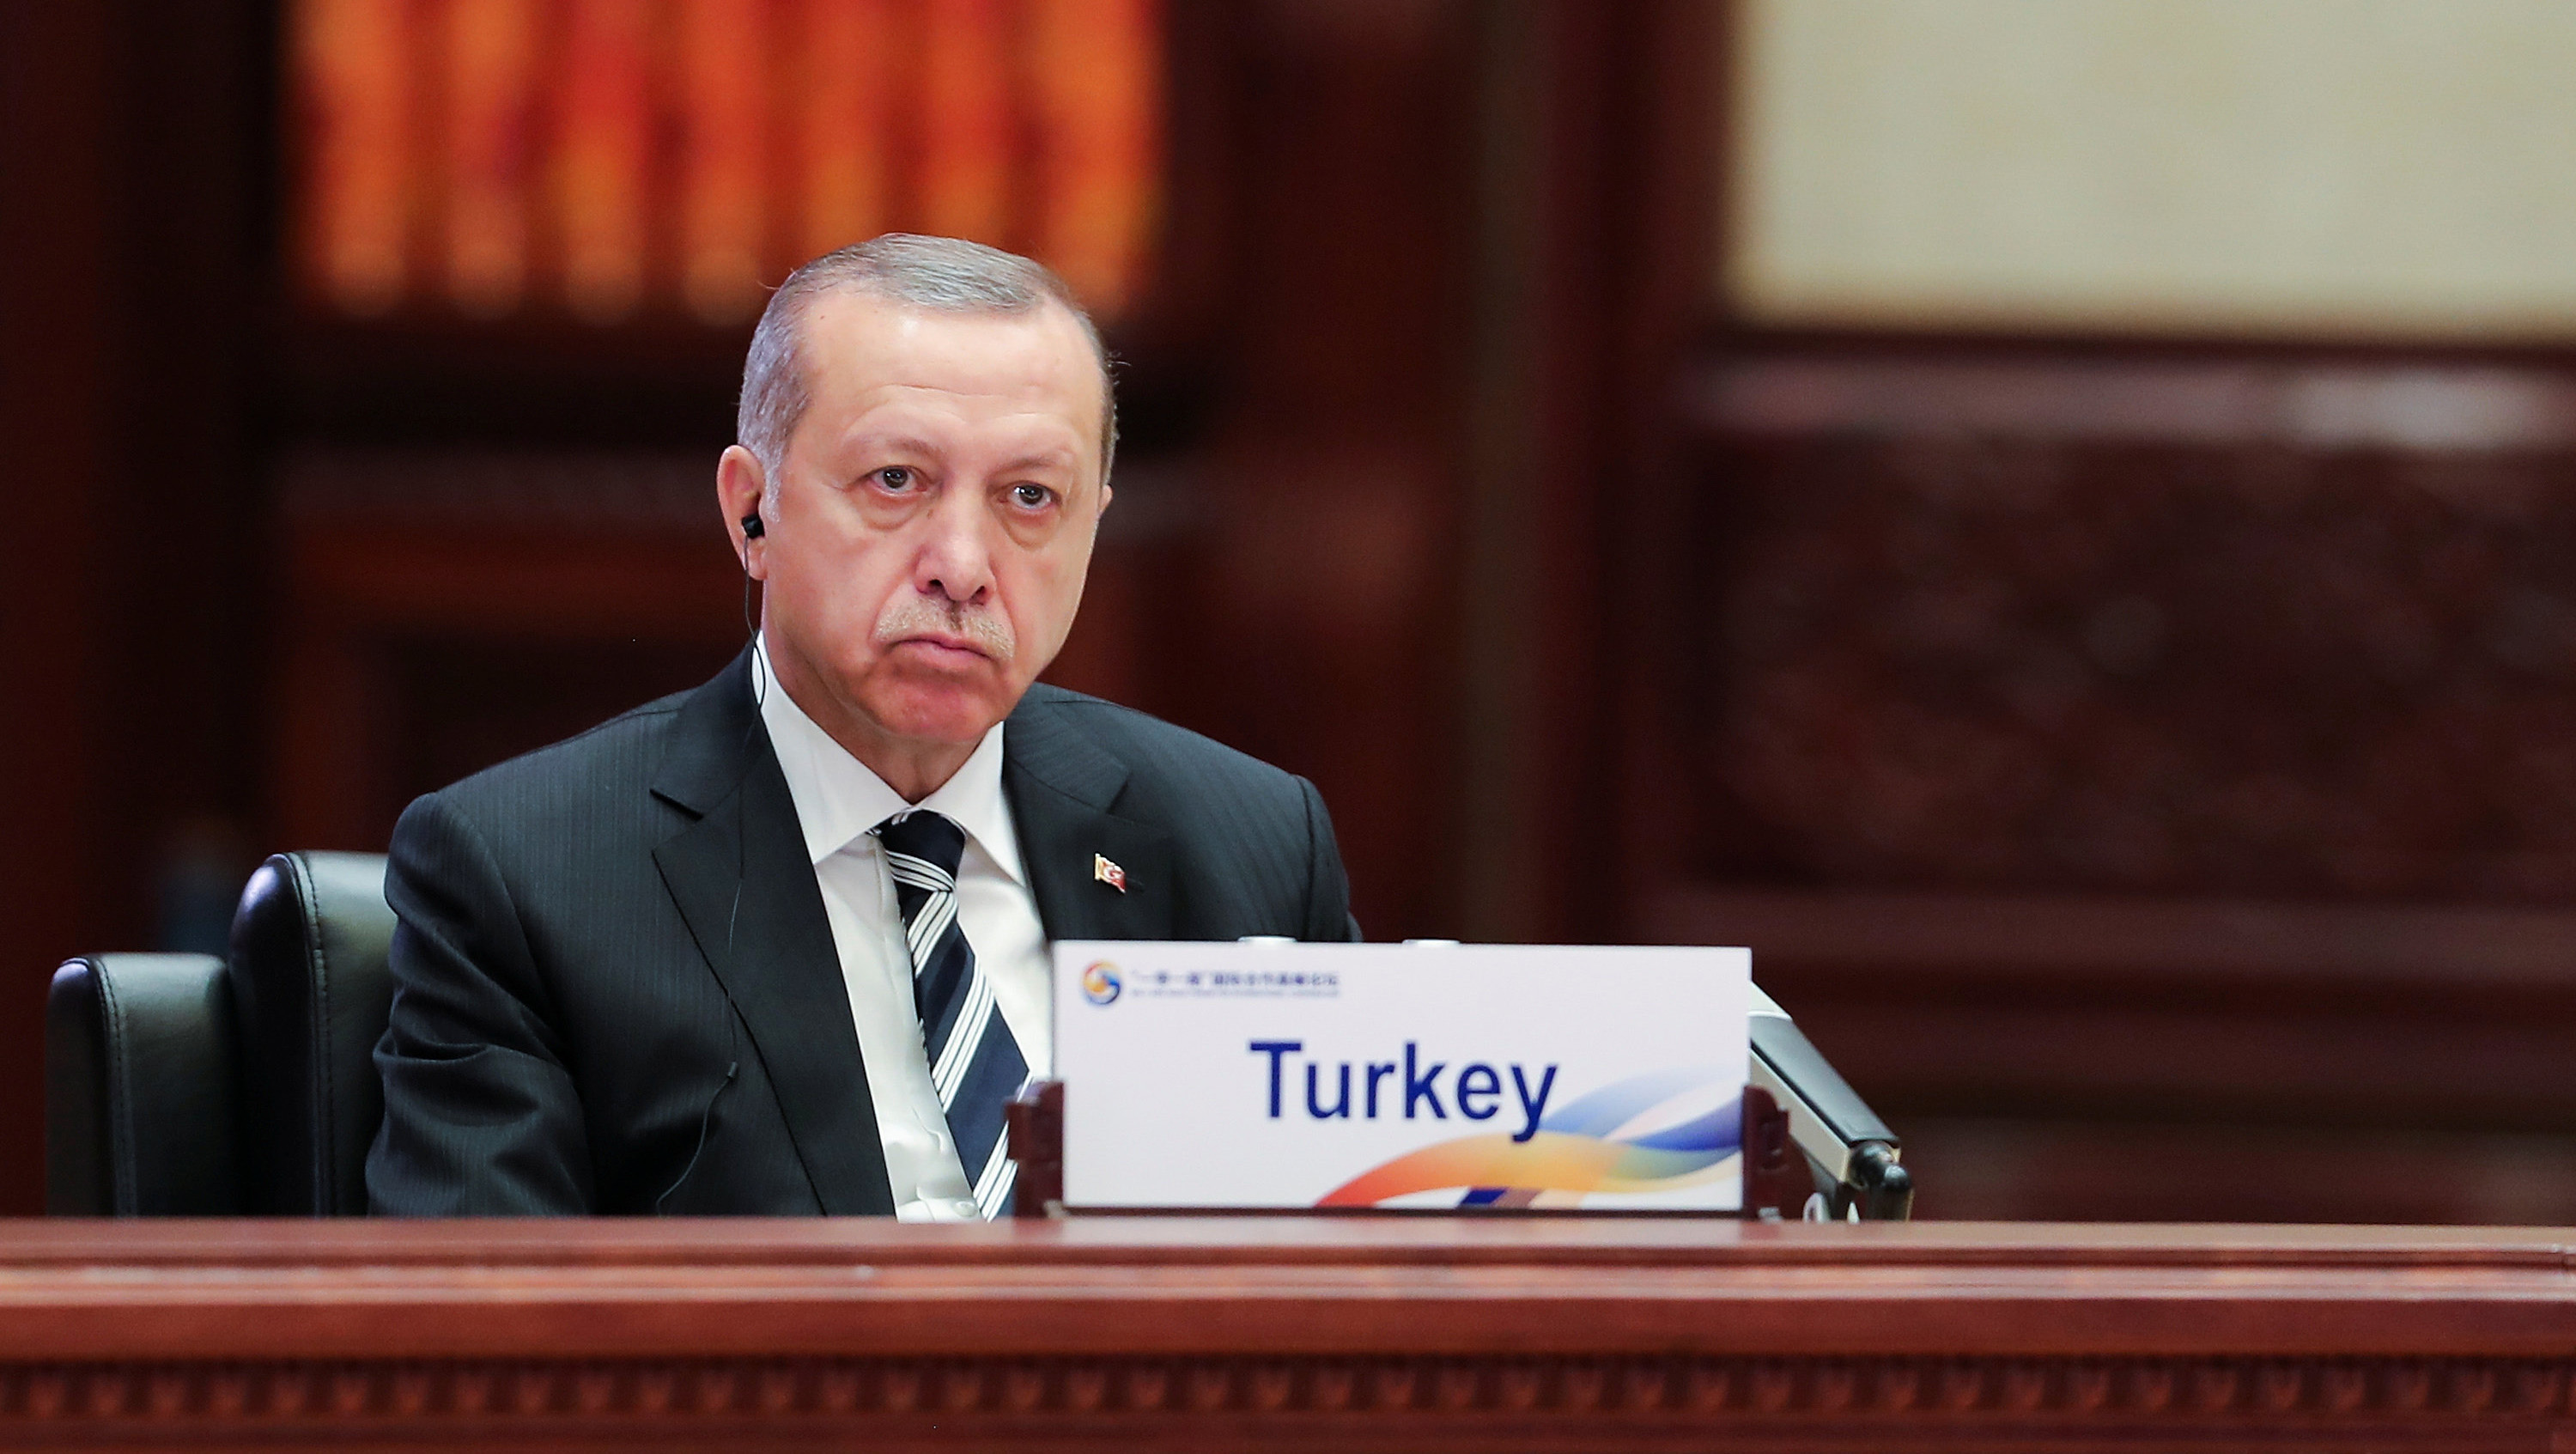 El presidente turco viajó a Washington tras participar en la Nueva Ruta de la Seda lanzada en China.